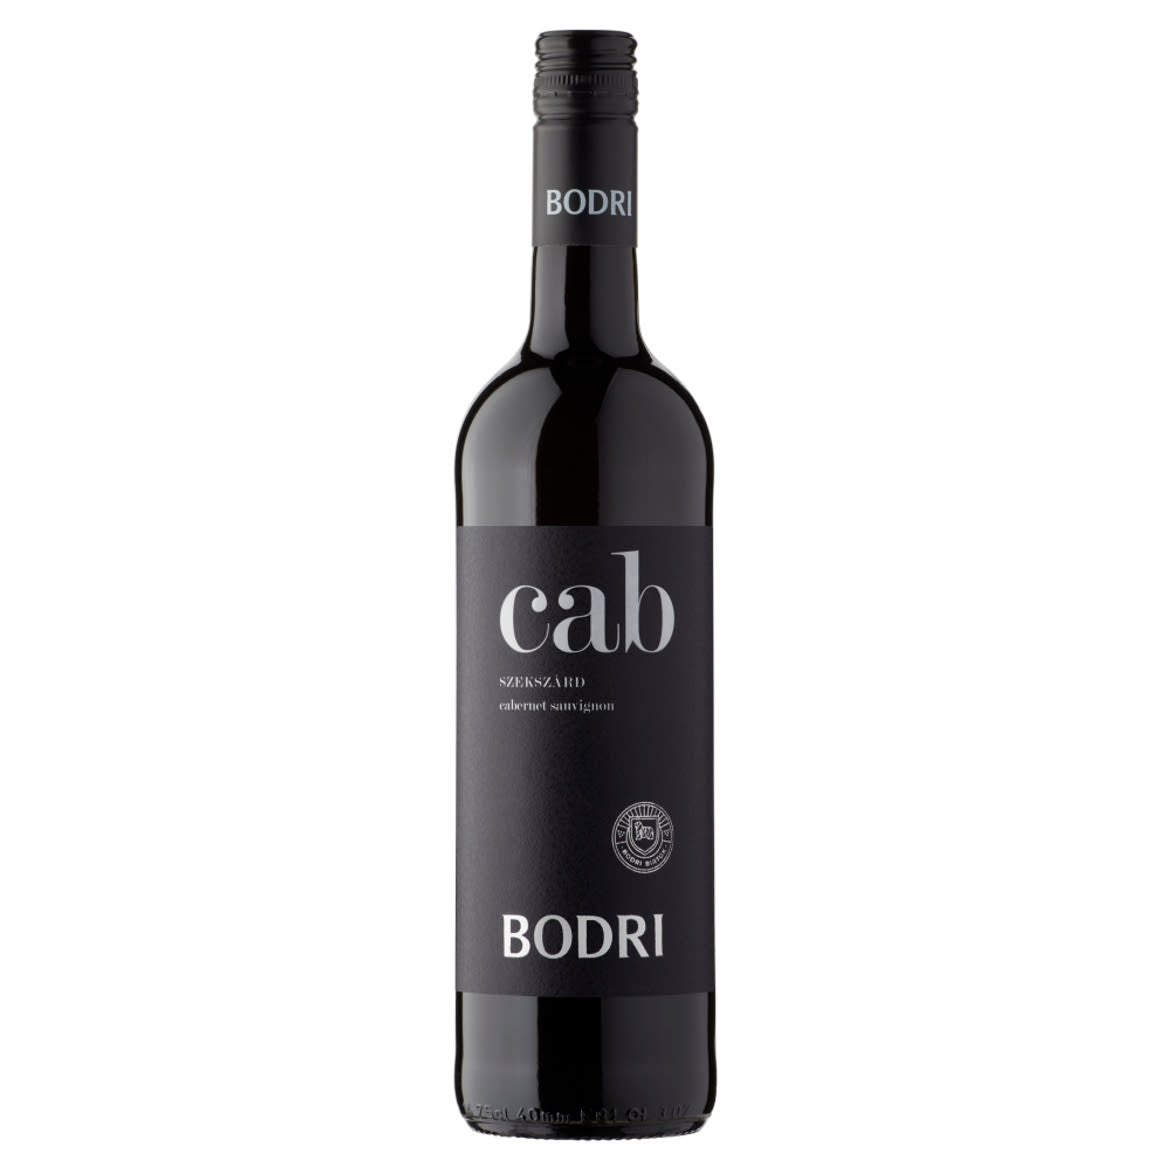 Bodri Cab Szekszárdi Cabernet Sauvignon száraz vörösbor 14%